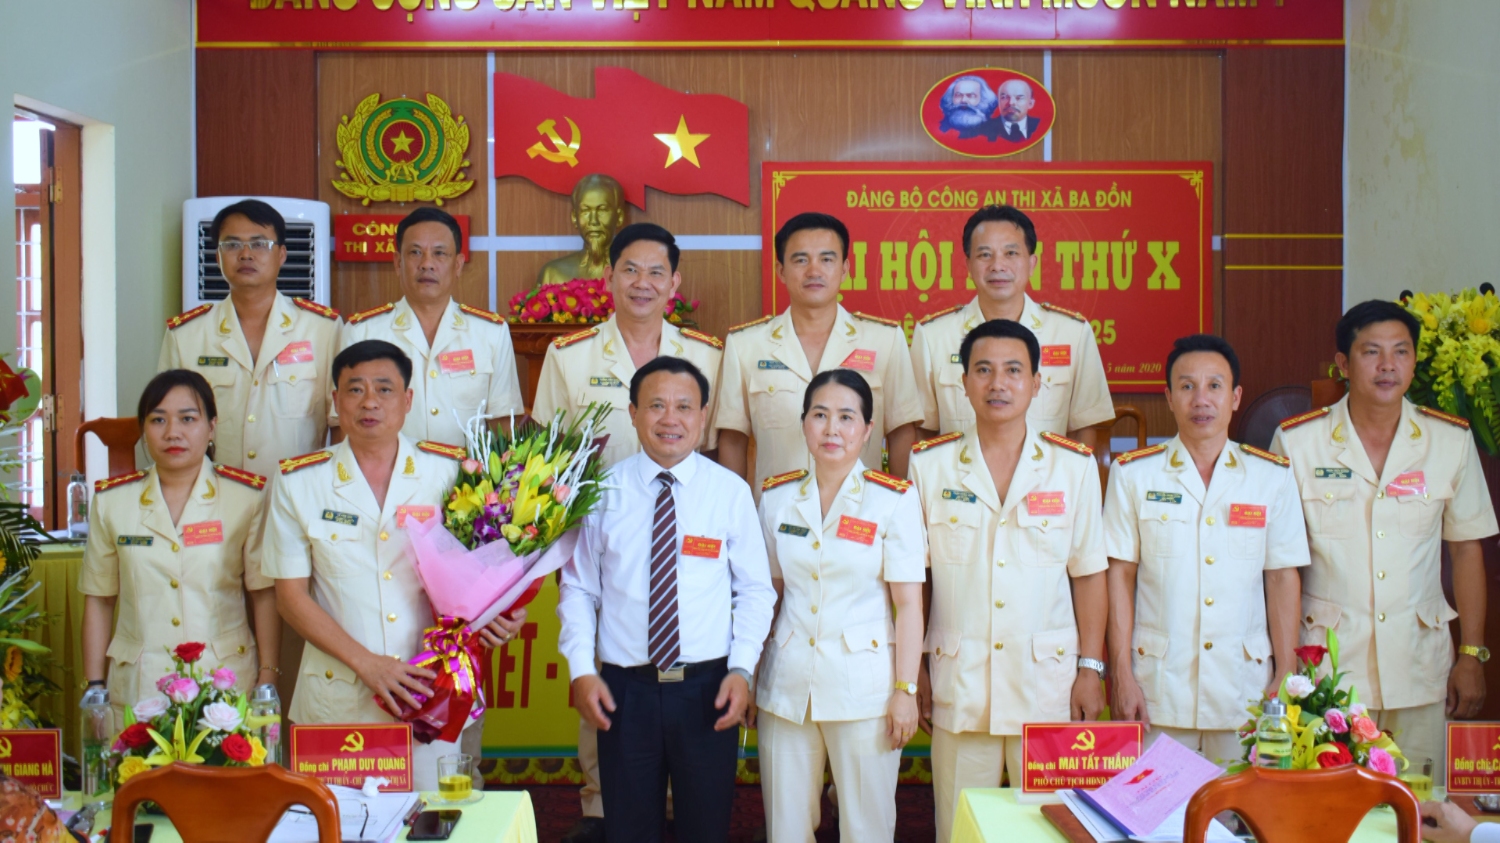 Đồng chí Phạm Duy Quang – Phó Bí thư thường Trực Thị ủy, Chủ tịch HĐND thị xã Ba Đồn tặng hoa chúc mừng BCH nhiệm kỳ mới.